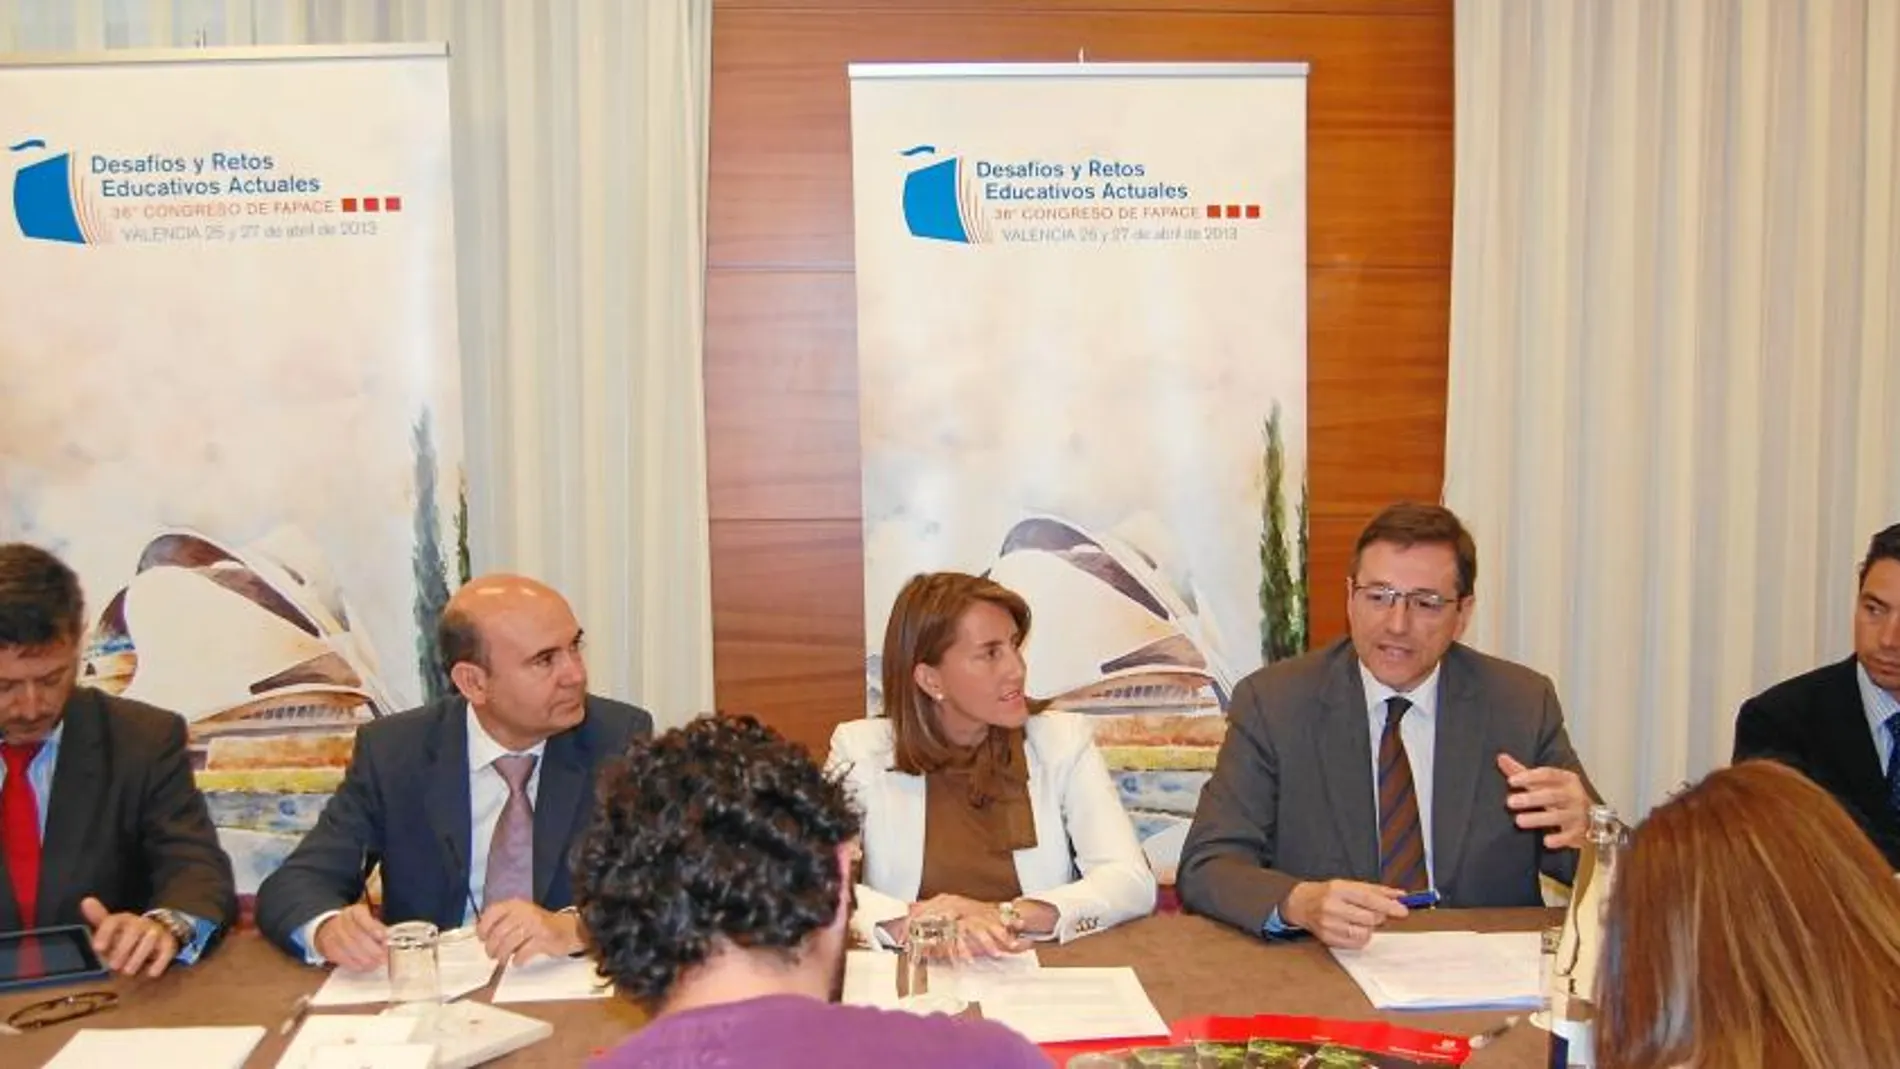 Luis Ricarte, Ricardo Gómez Lechón, Regina Fernández, Lorenzo Dionis y Juan Aznar presentaron este Congreso